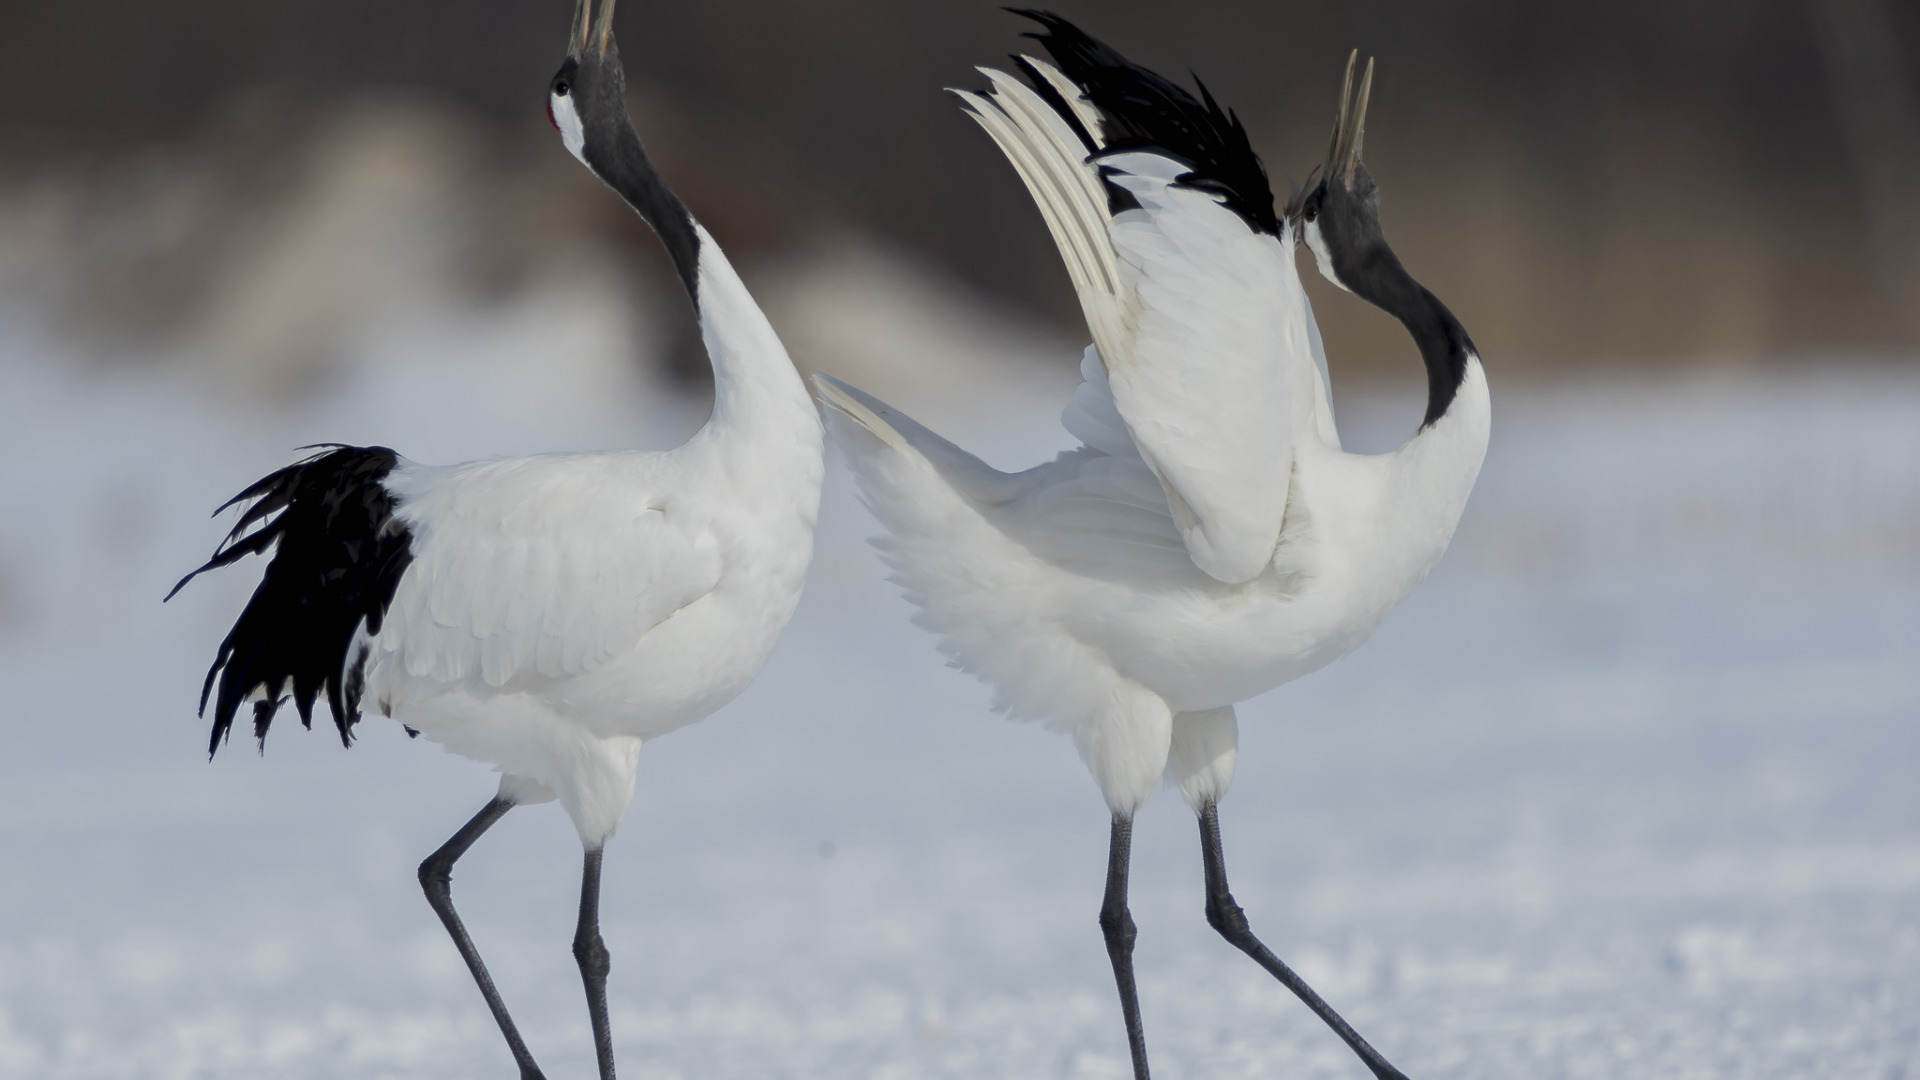 دریافت والپیپر دو پرنده زیبا و سفید در زمستان برفی